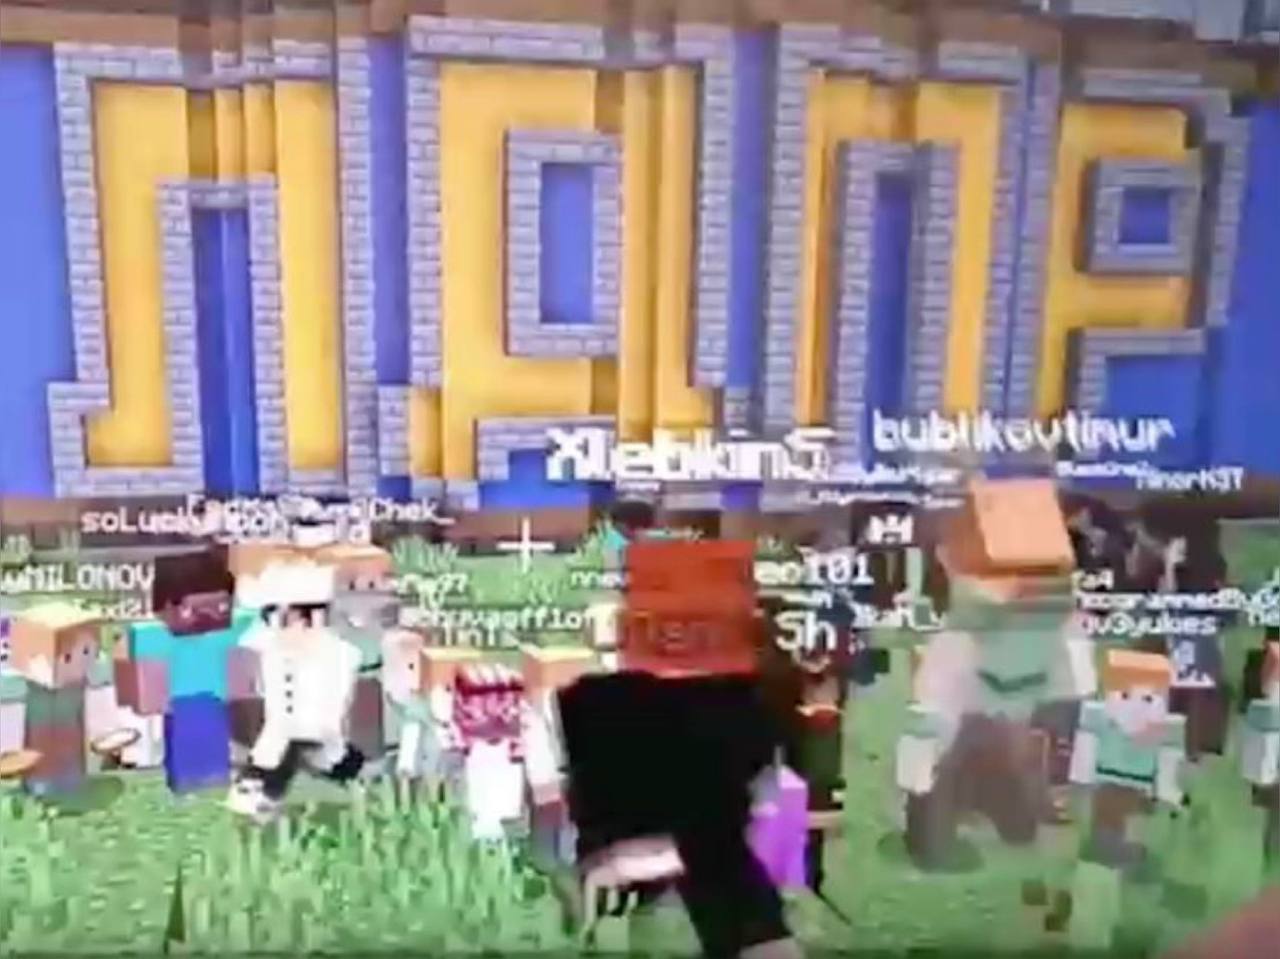 Митинг у памятника Жириновскому в Minecraft был без принудиловки, заверили в ЛДПР